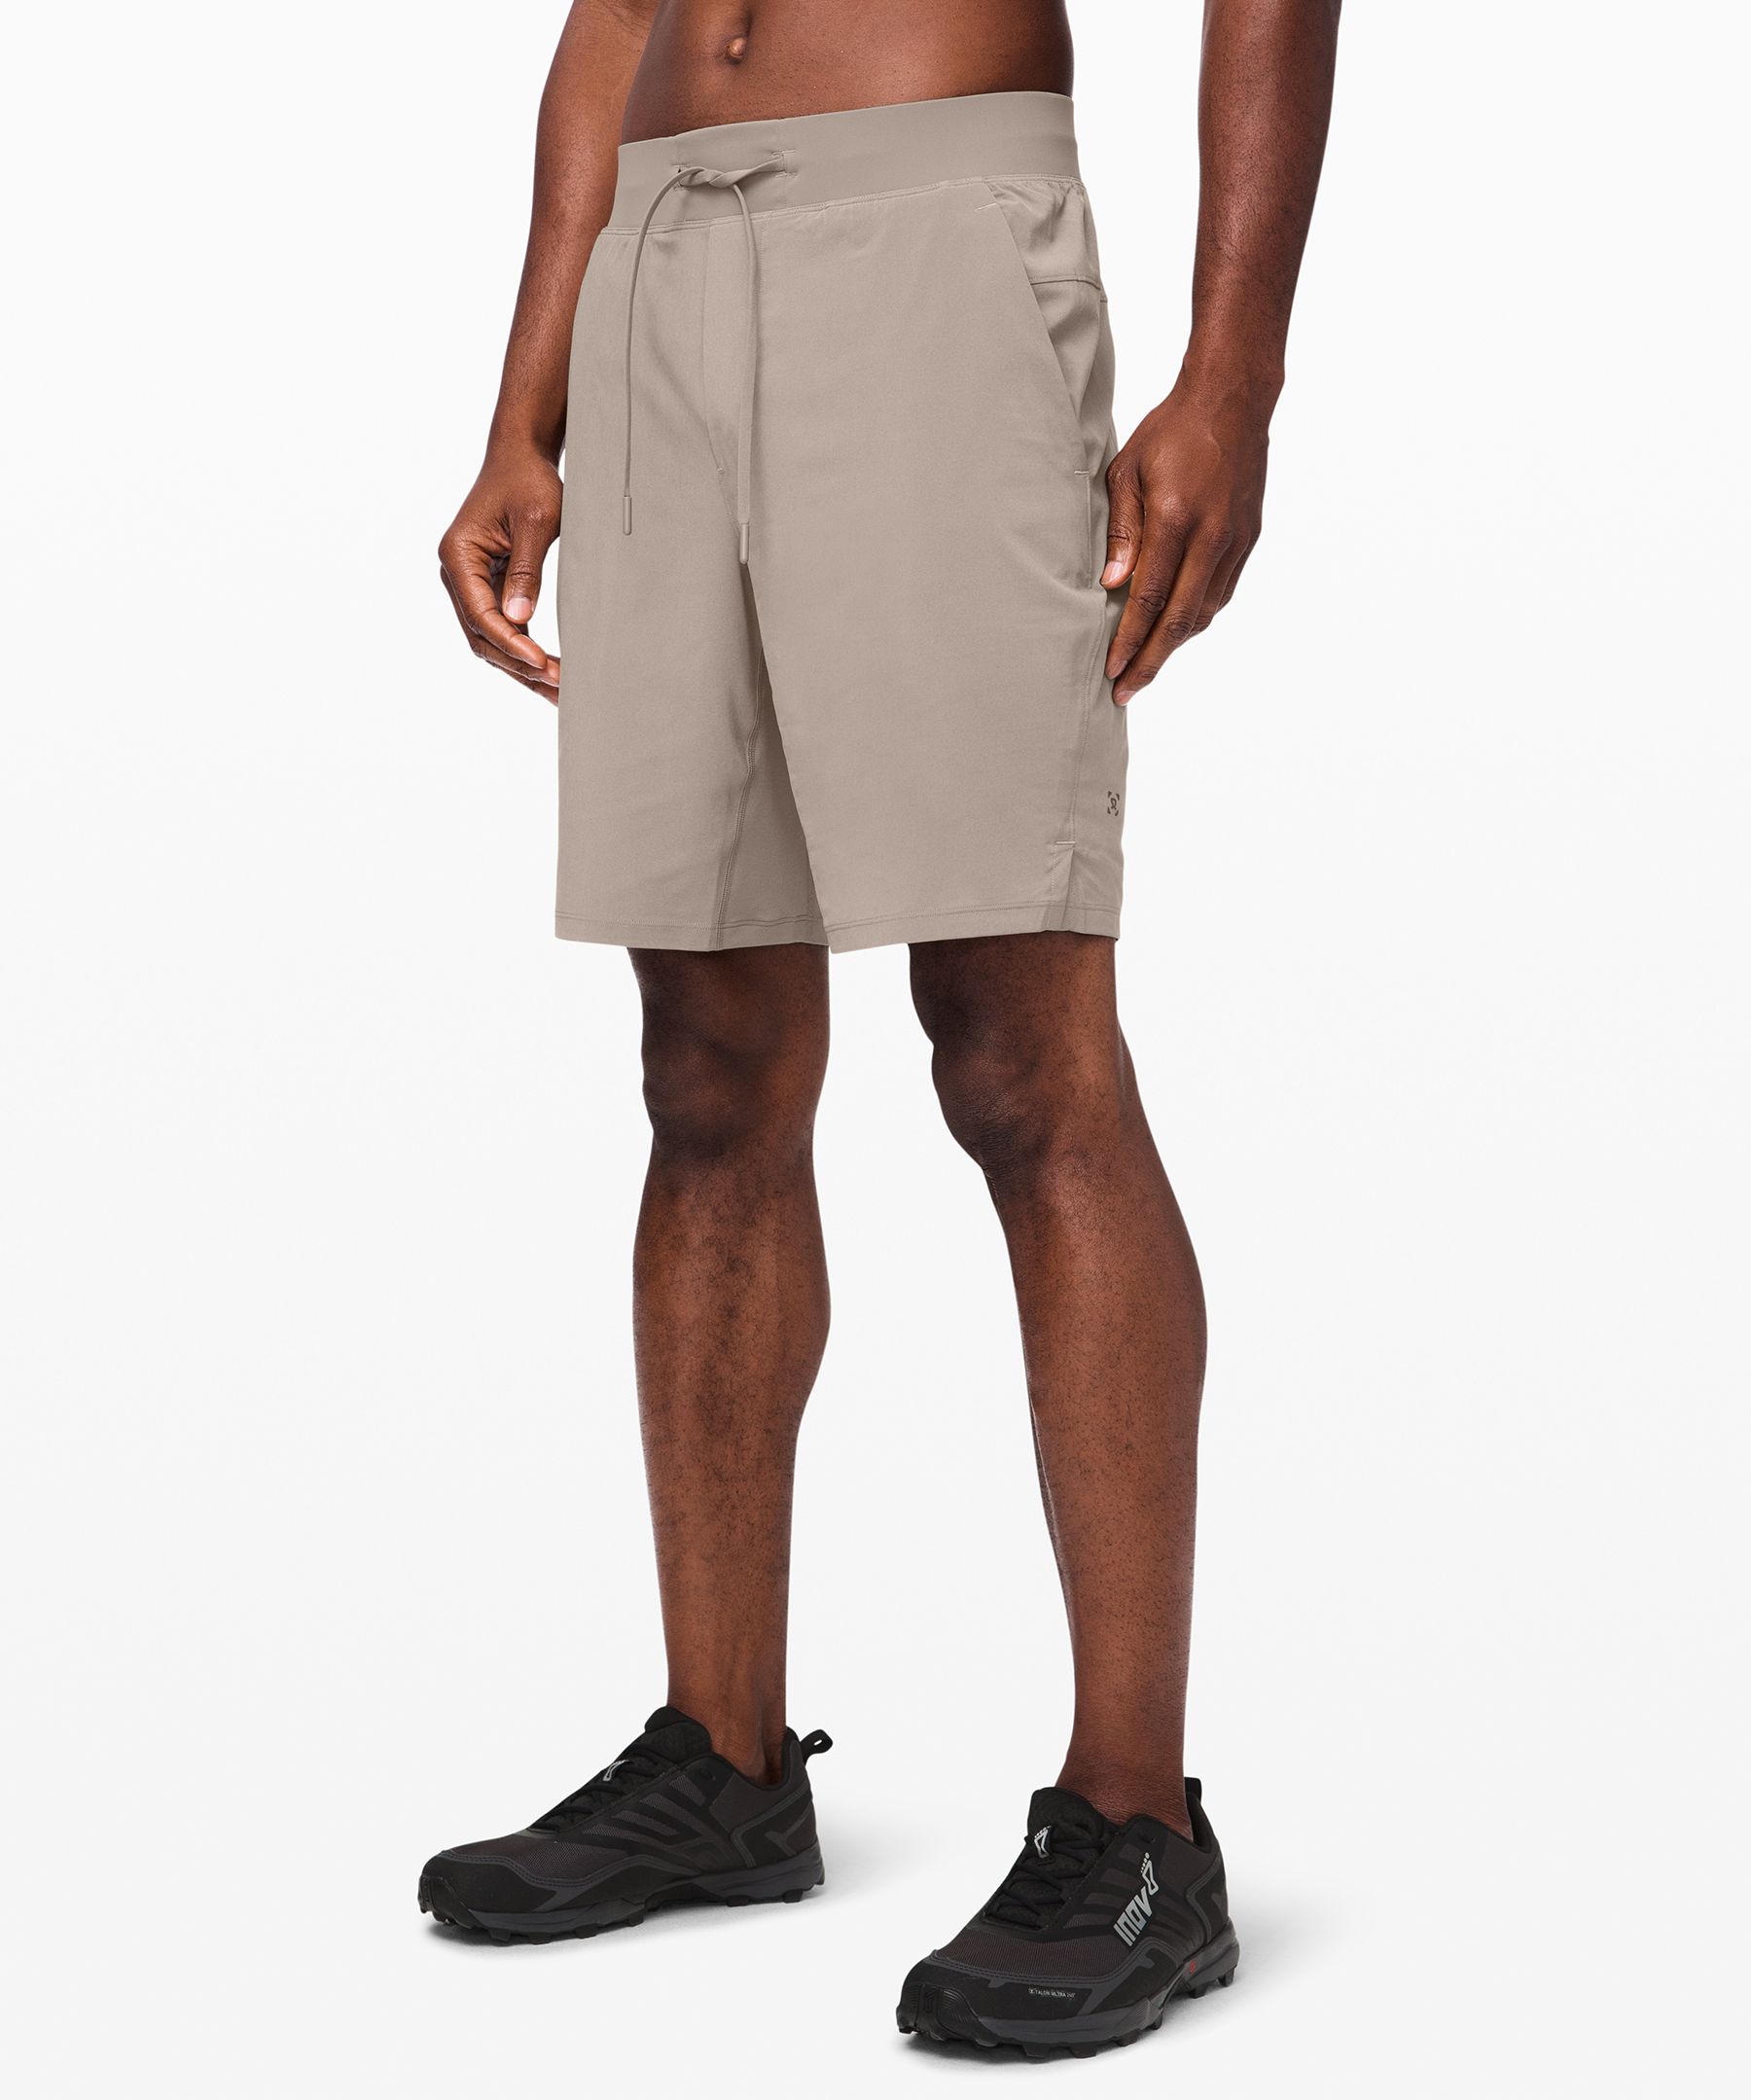 lululemon khaki shorts